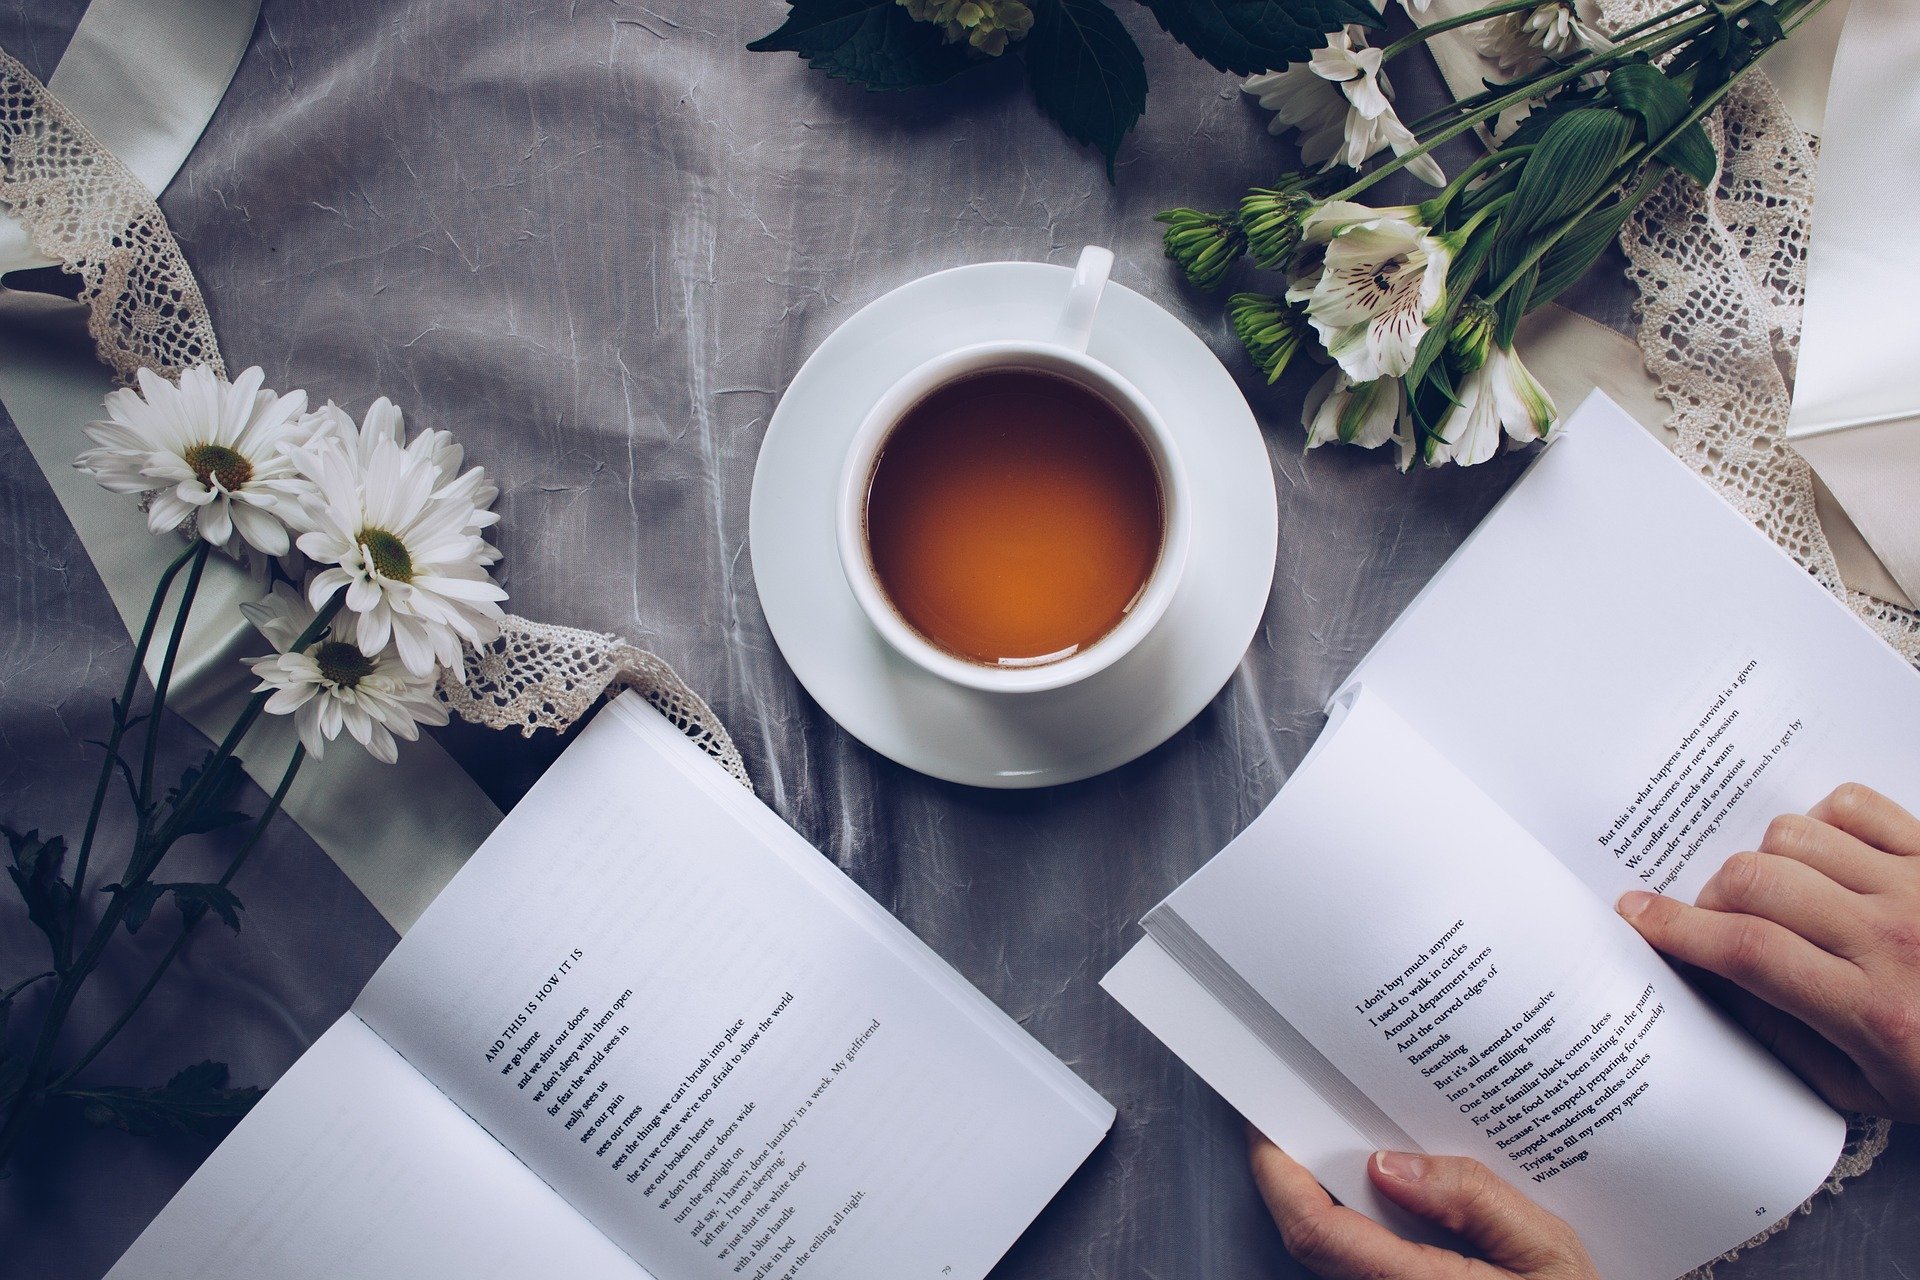 Pessoa lendo livro ao lado de flores e uma xícara de chá